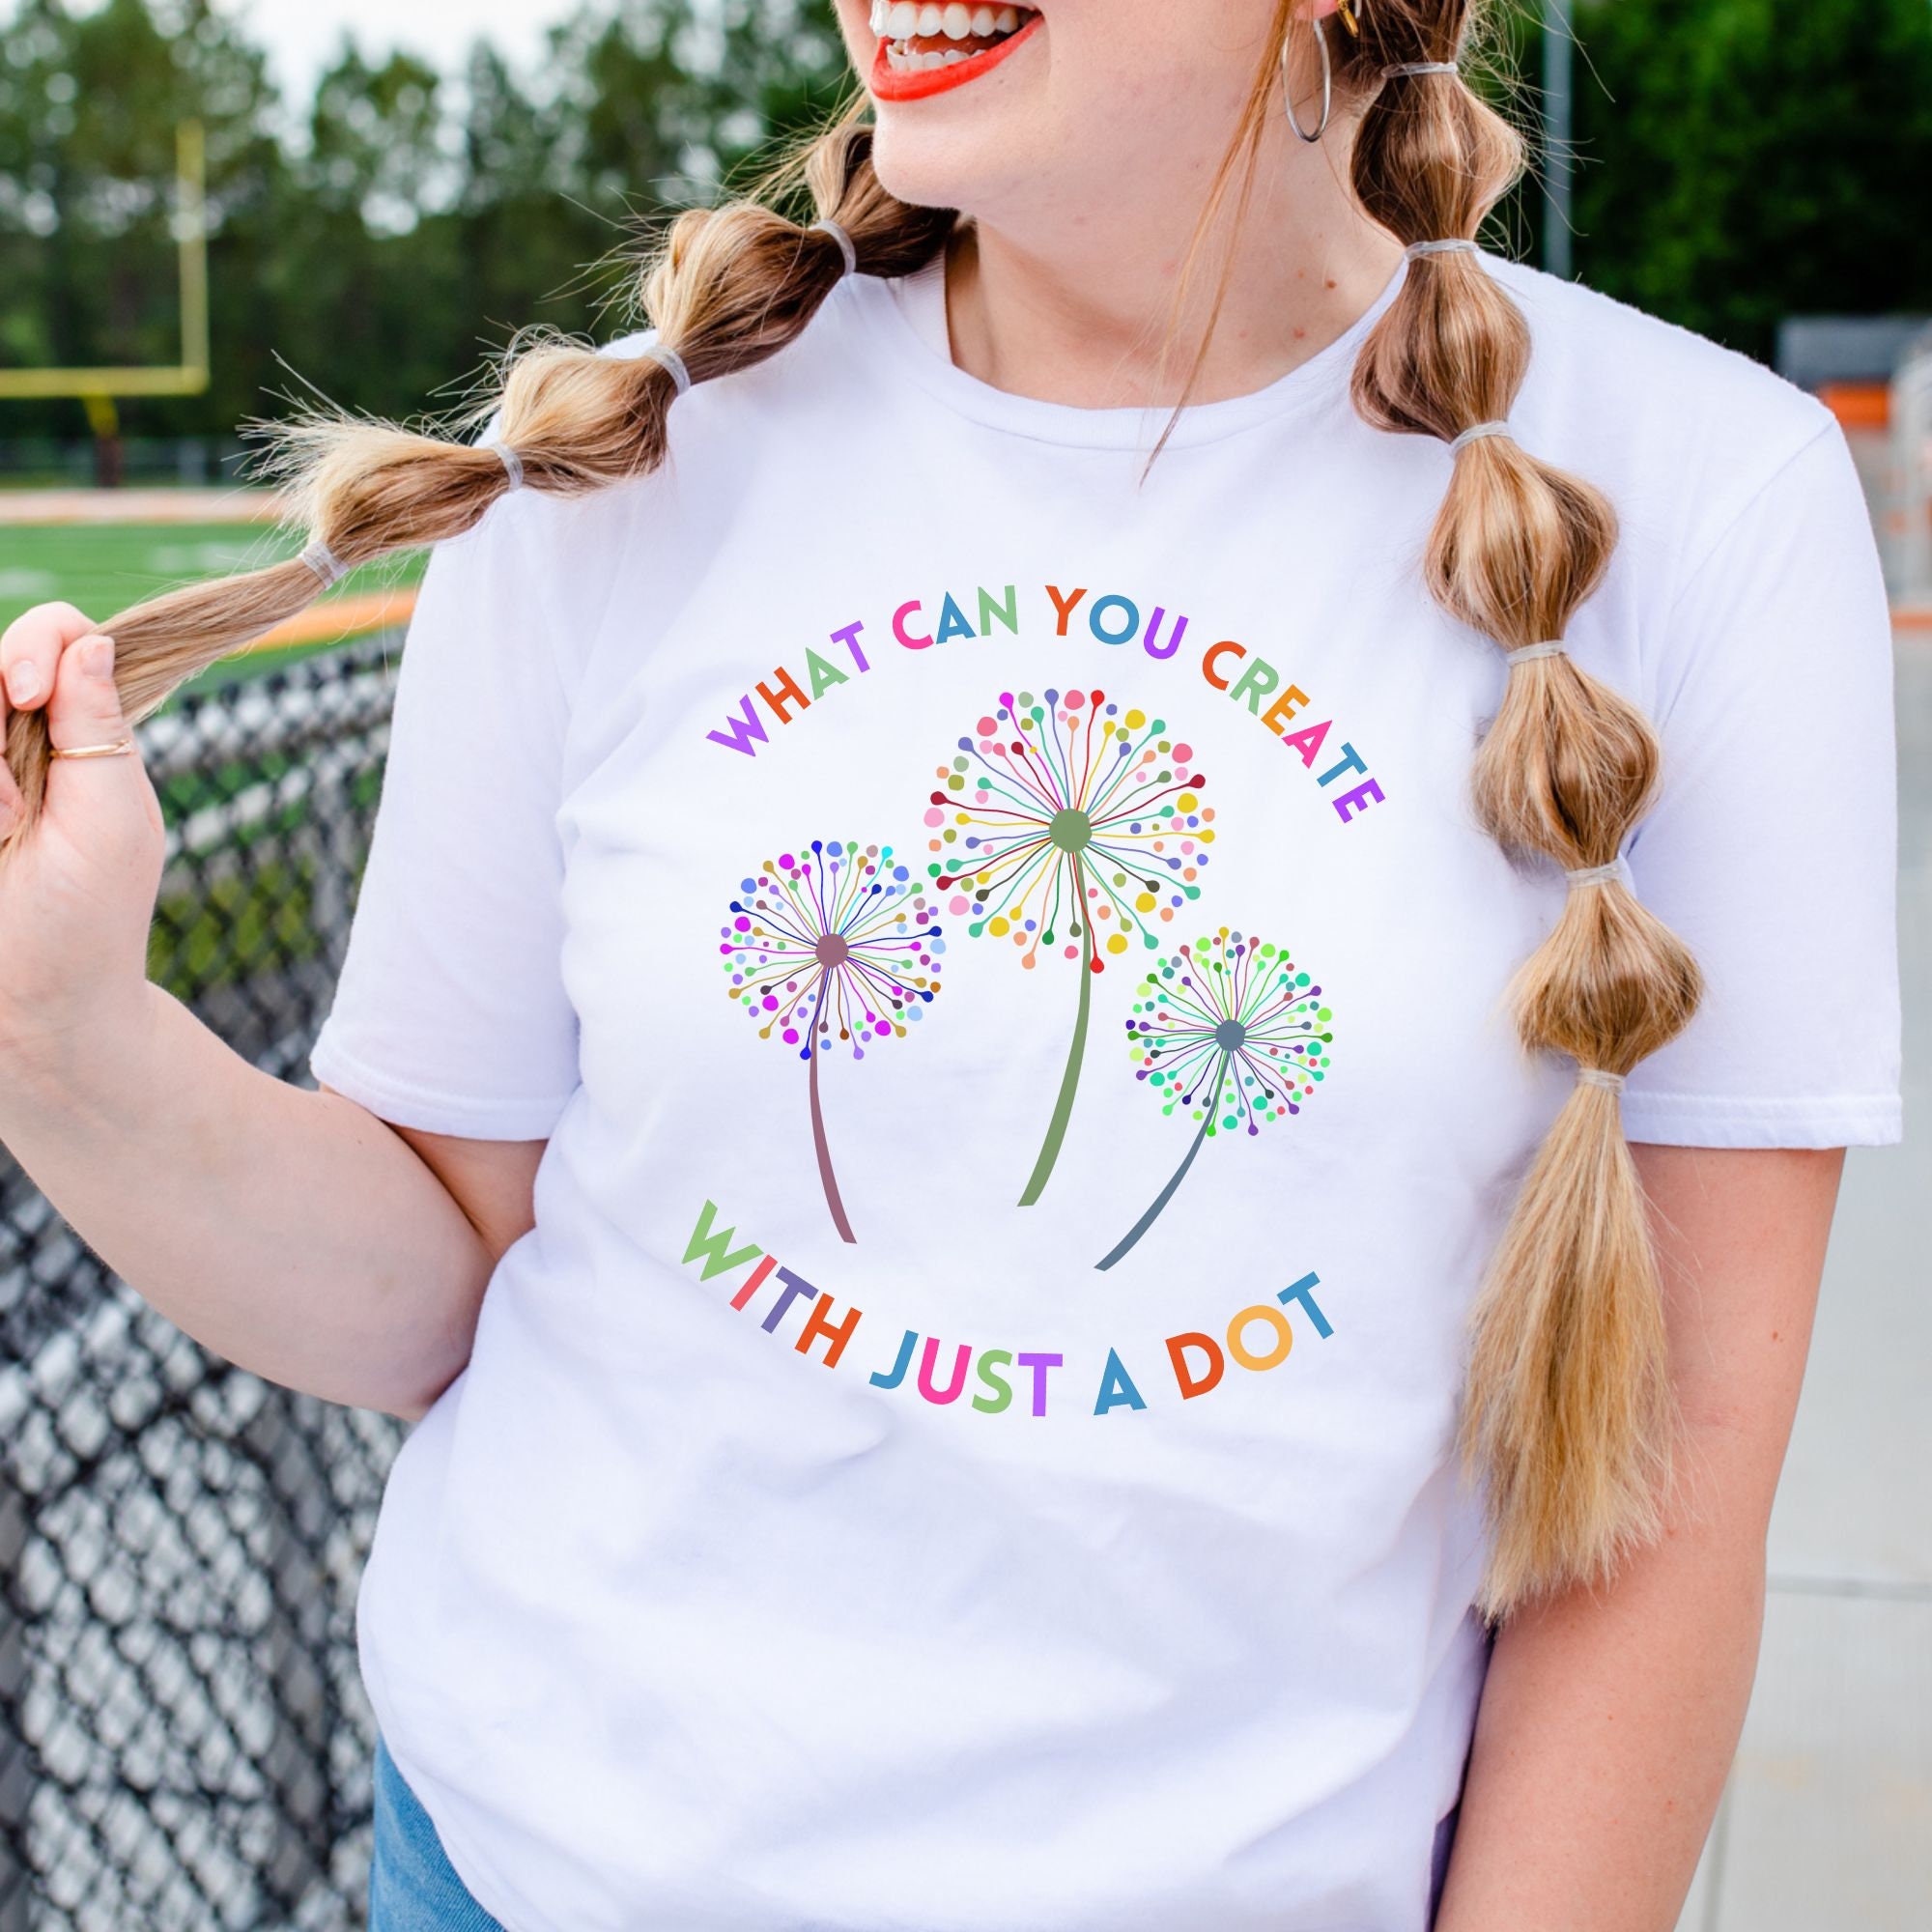 Dot Day T Shirt Happy Dot Day Shirt Shirt for Art Teacher 